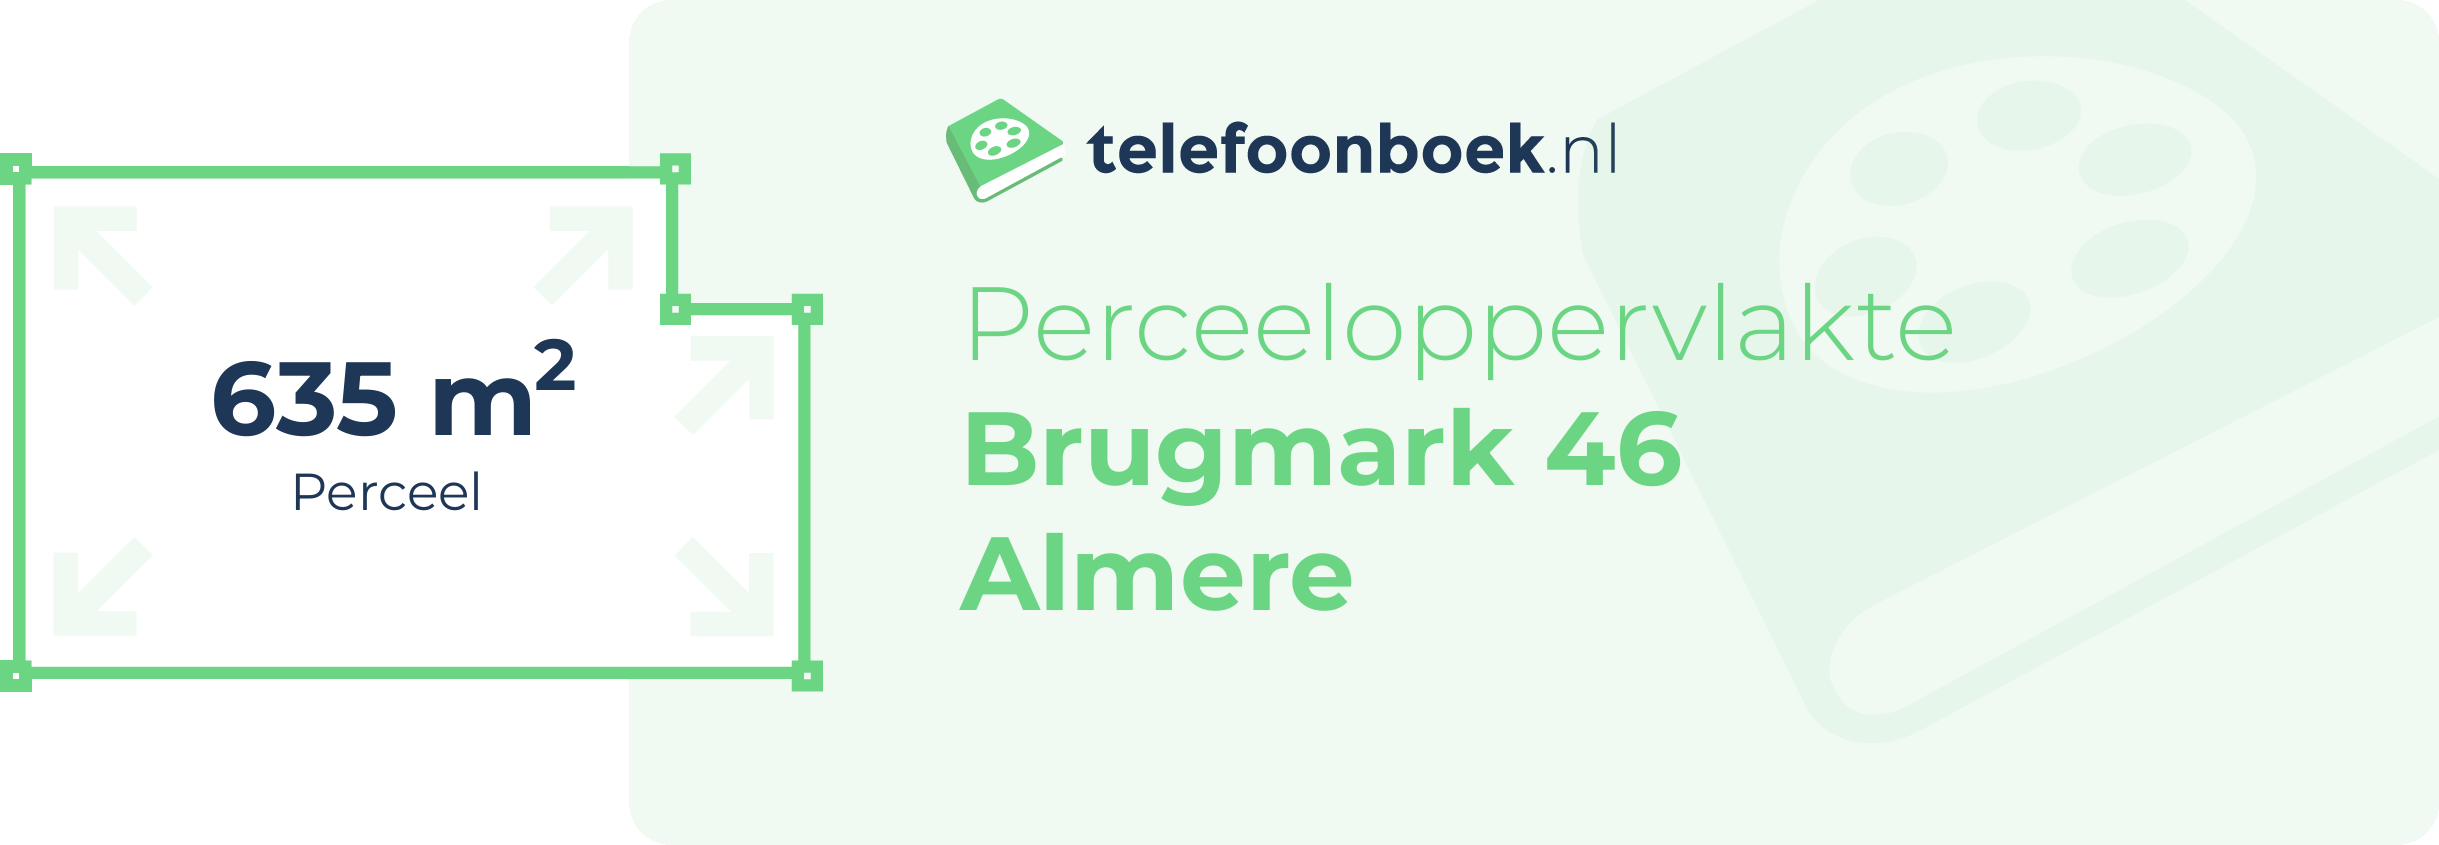 Perceeloppervlakte Brugmark 46 Almere